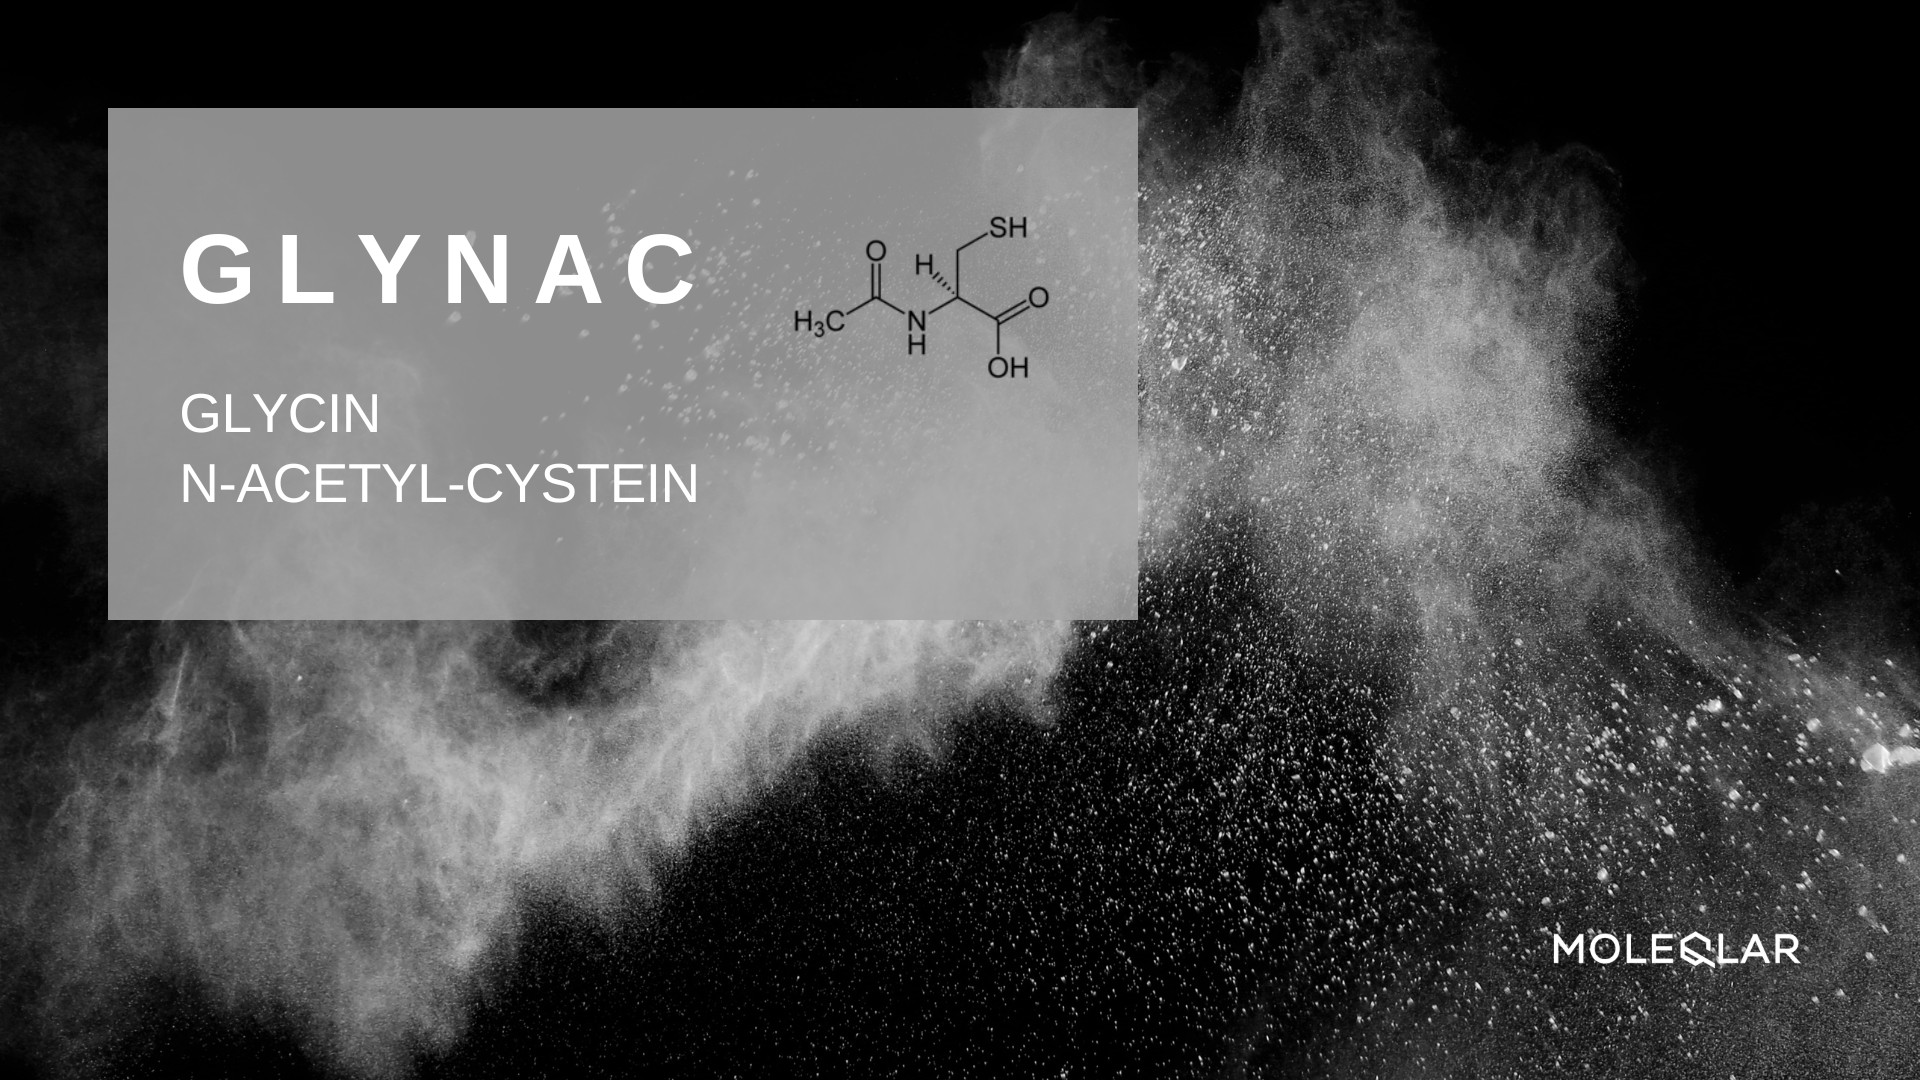 GlyNAC - Glycin & N-Acetyl-Cystein